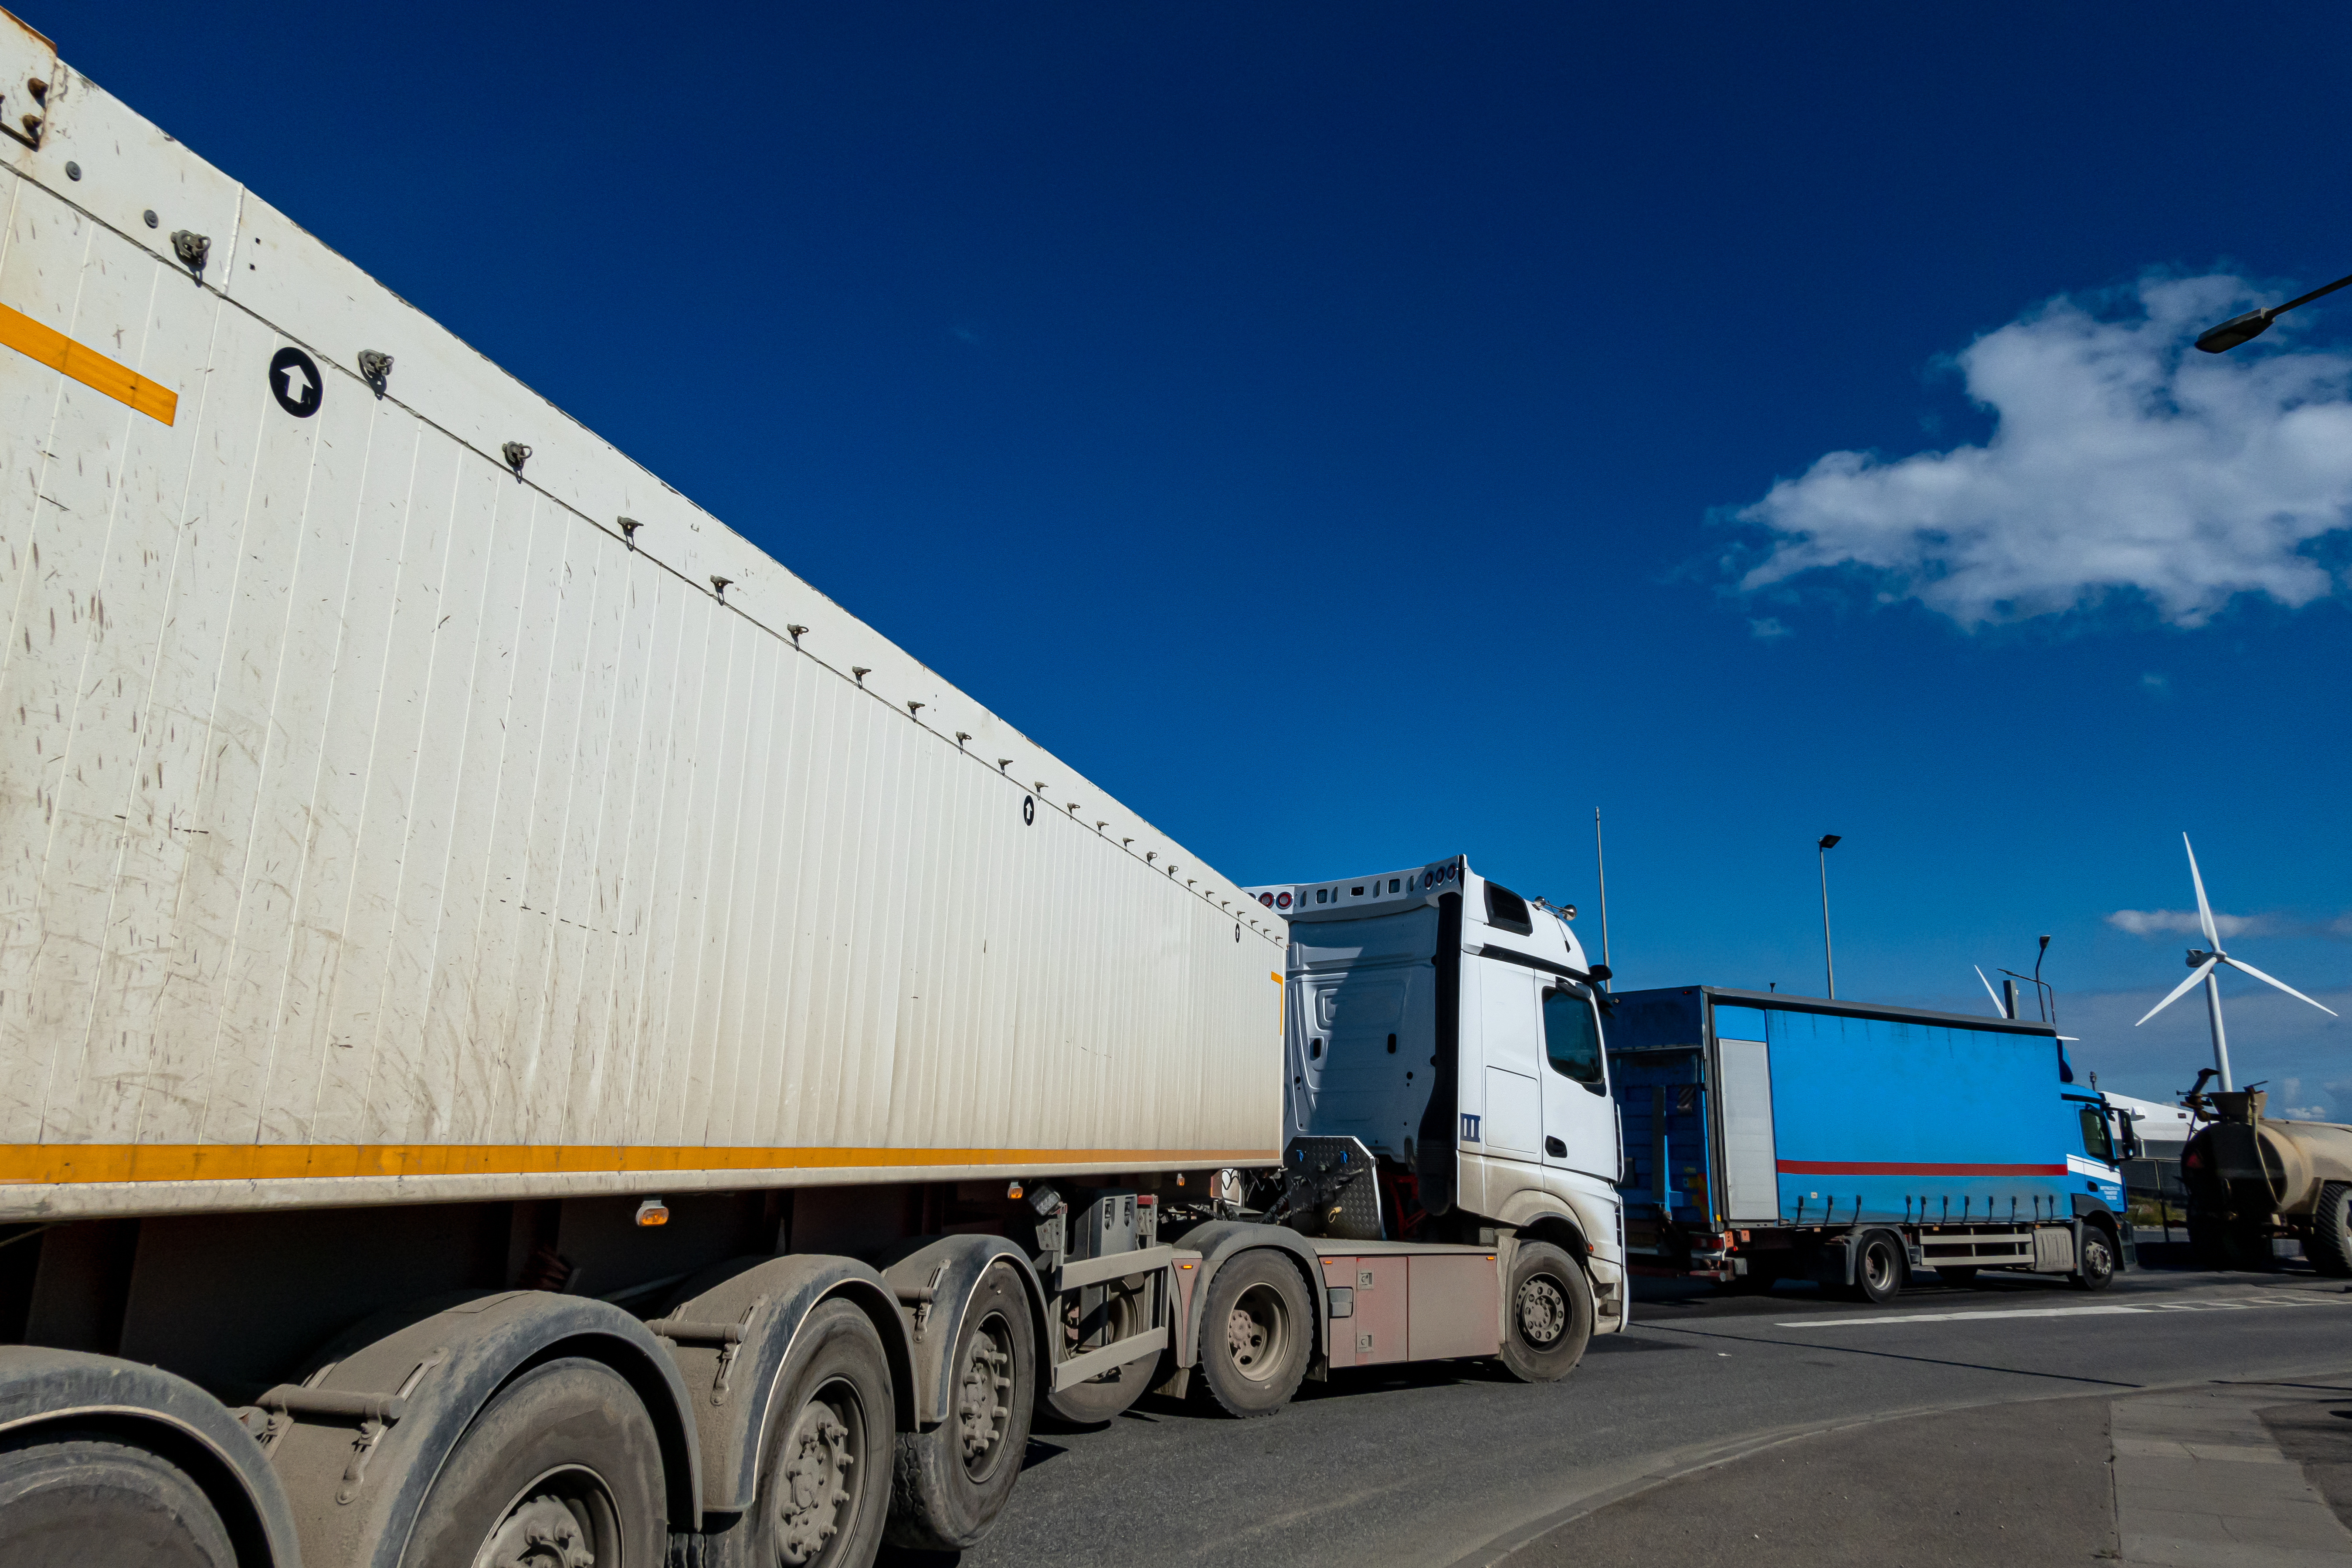  Danemarca impune amenzi mai mari transportatorilor pentru încălcări ale regulilor